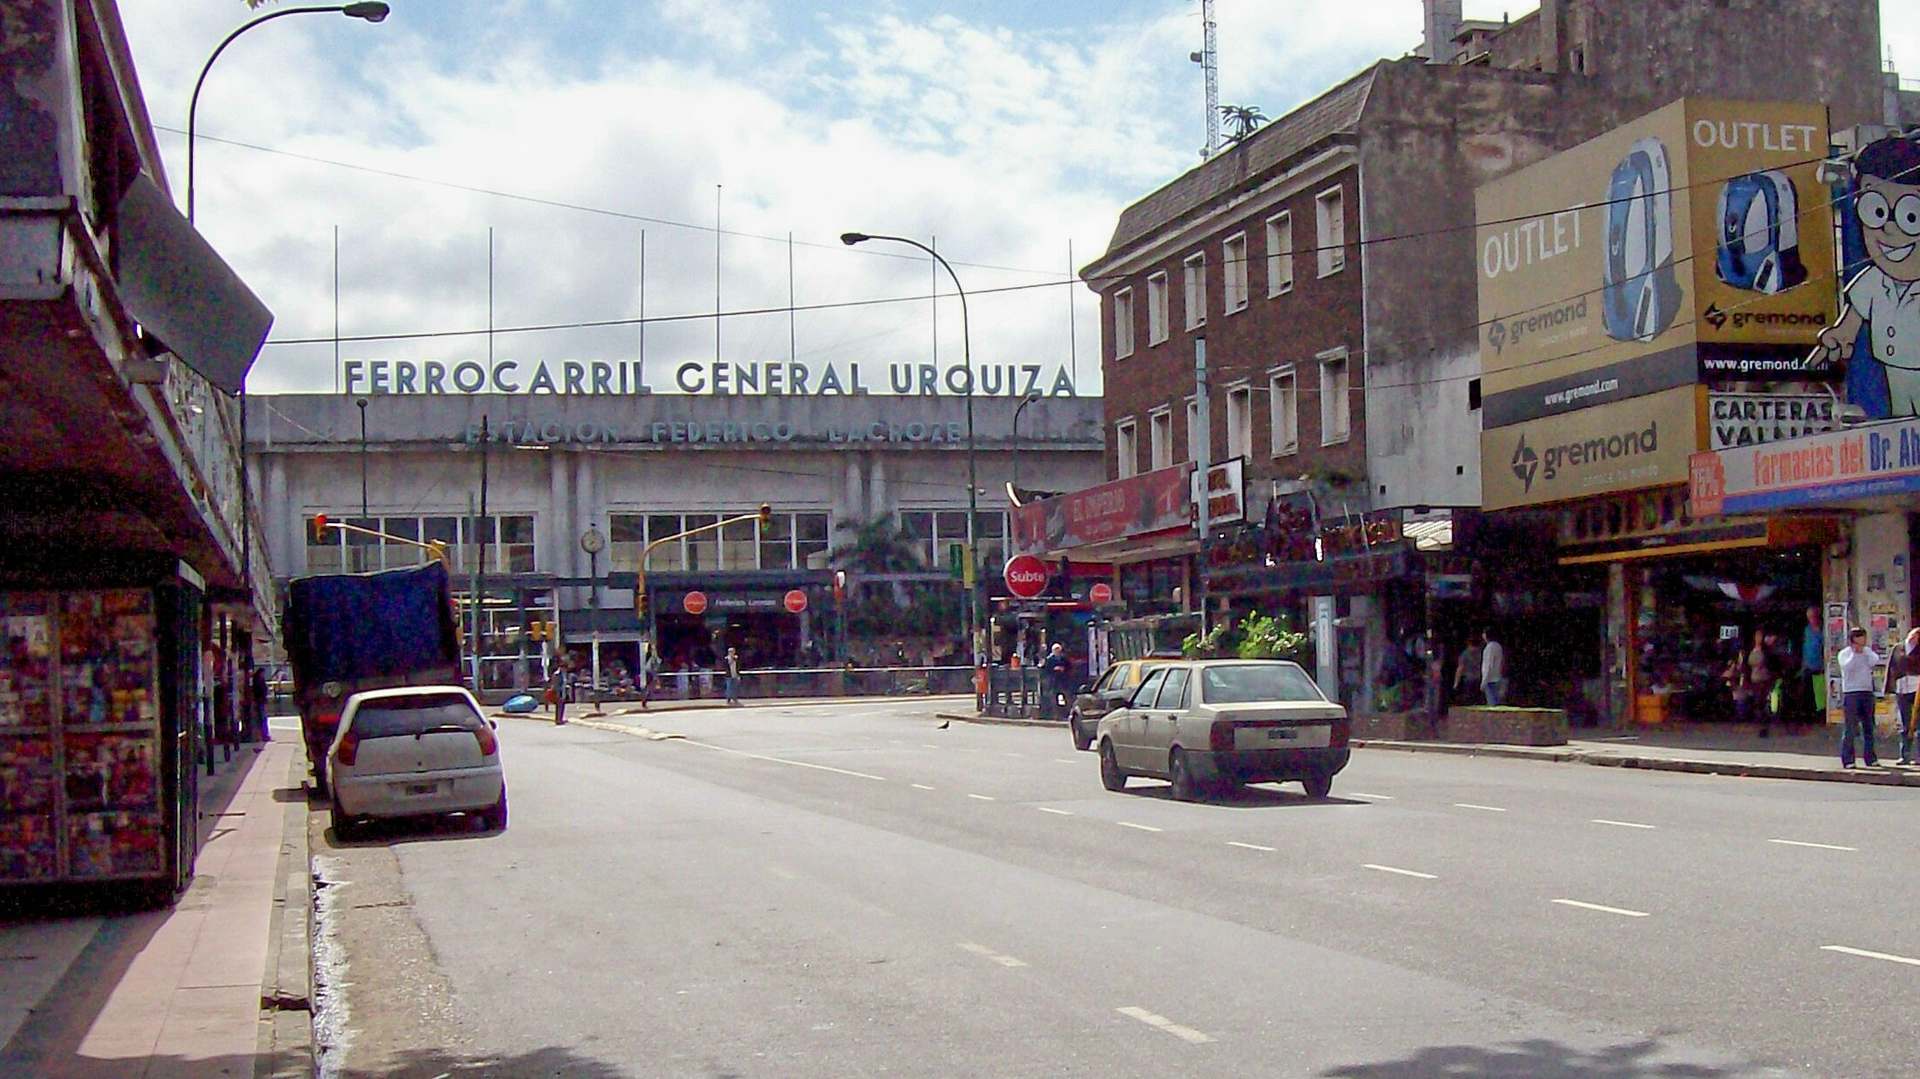 La estación servía de terminal del ex Ferrocarril General Urquiza